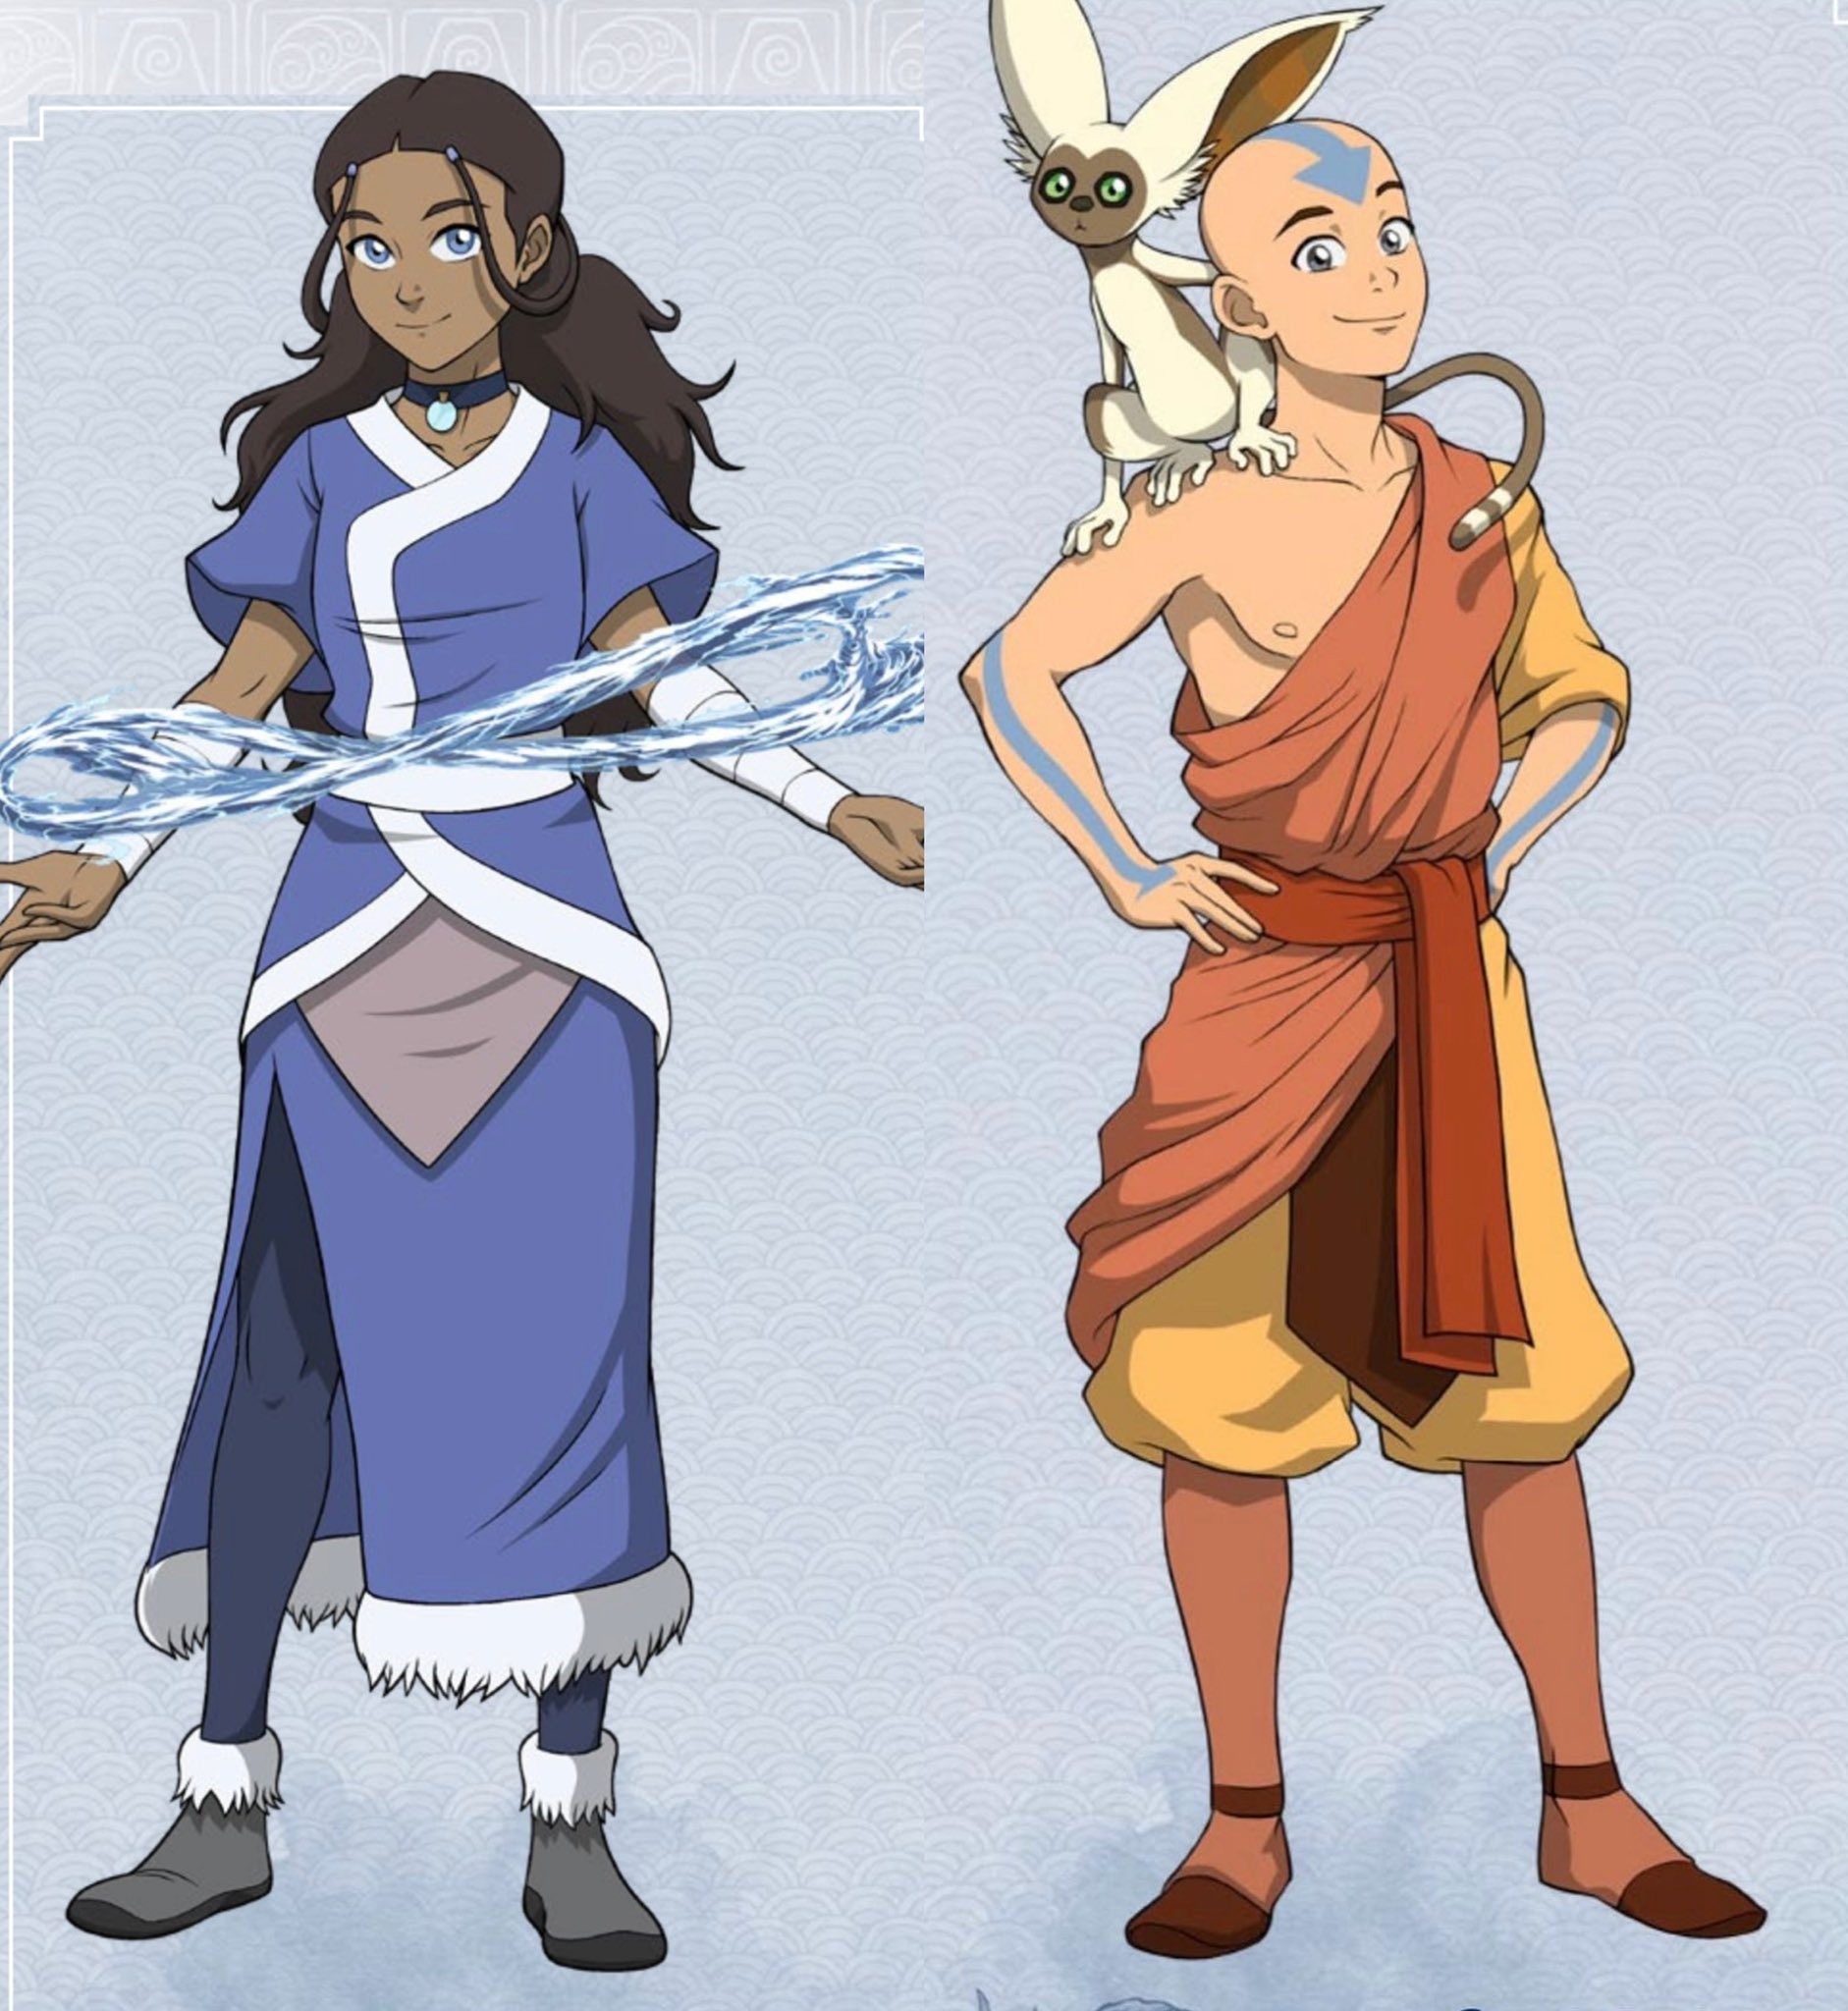 Kataang hàng ngày:
Cuộc phiêu lưu của Avatar: The Last Airbender không chỉ về chiến đấu và truyền thống, mà còn về tình yêu. Kataang, tên gọi của mối quan hệ giữa Aang và Katara, được xem như chìa khóa của \